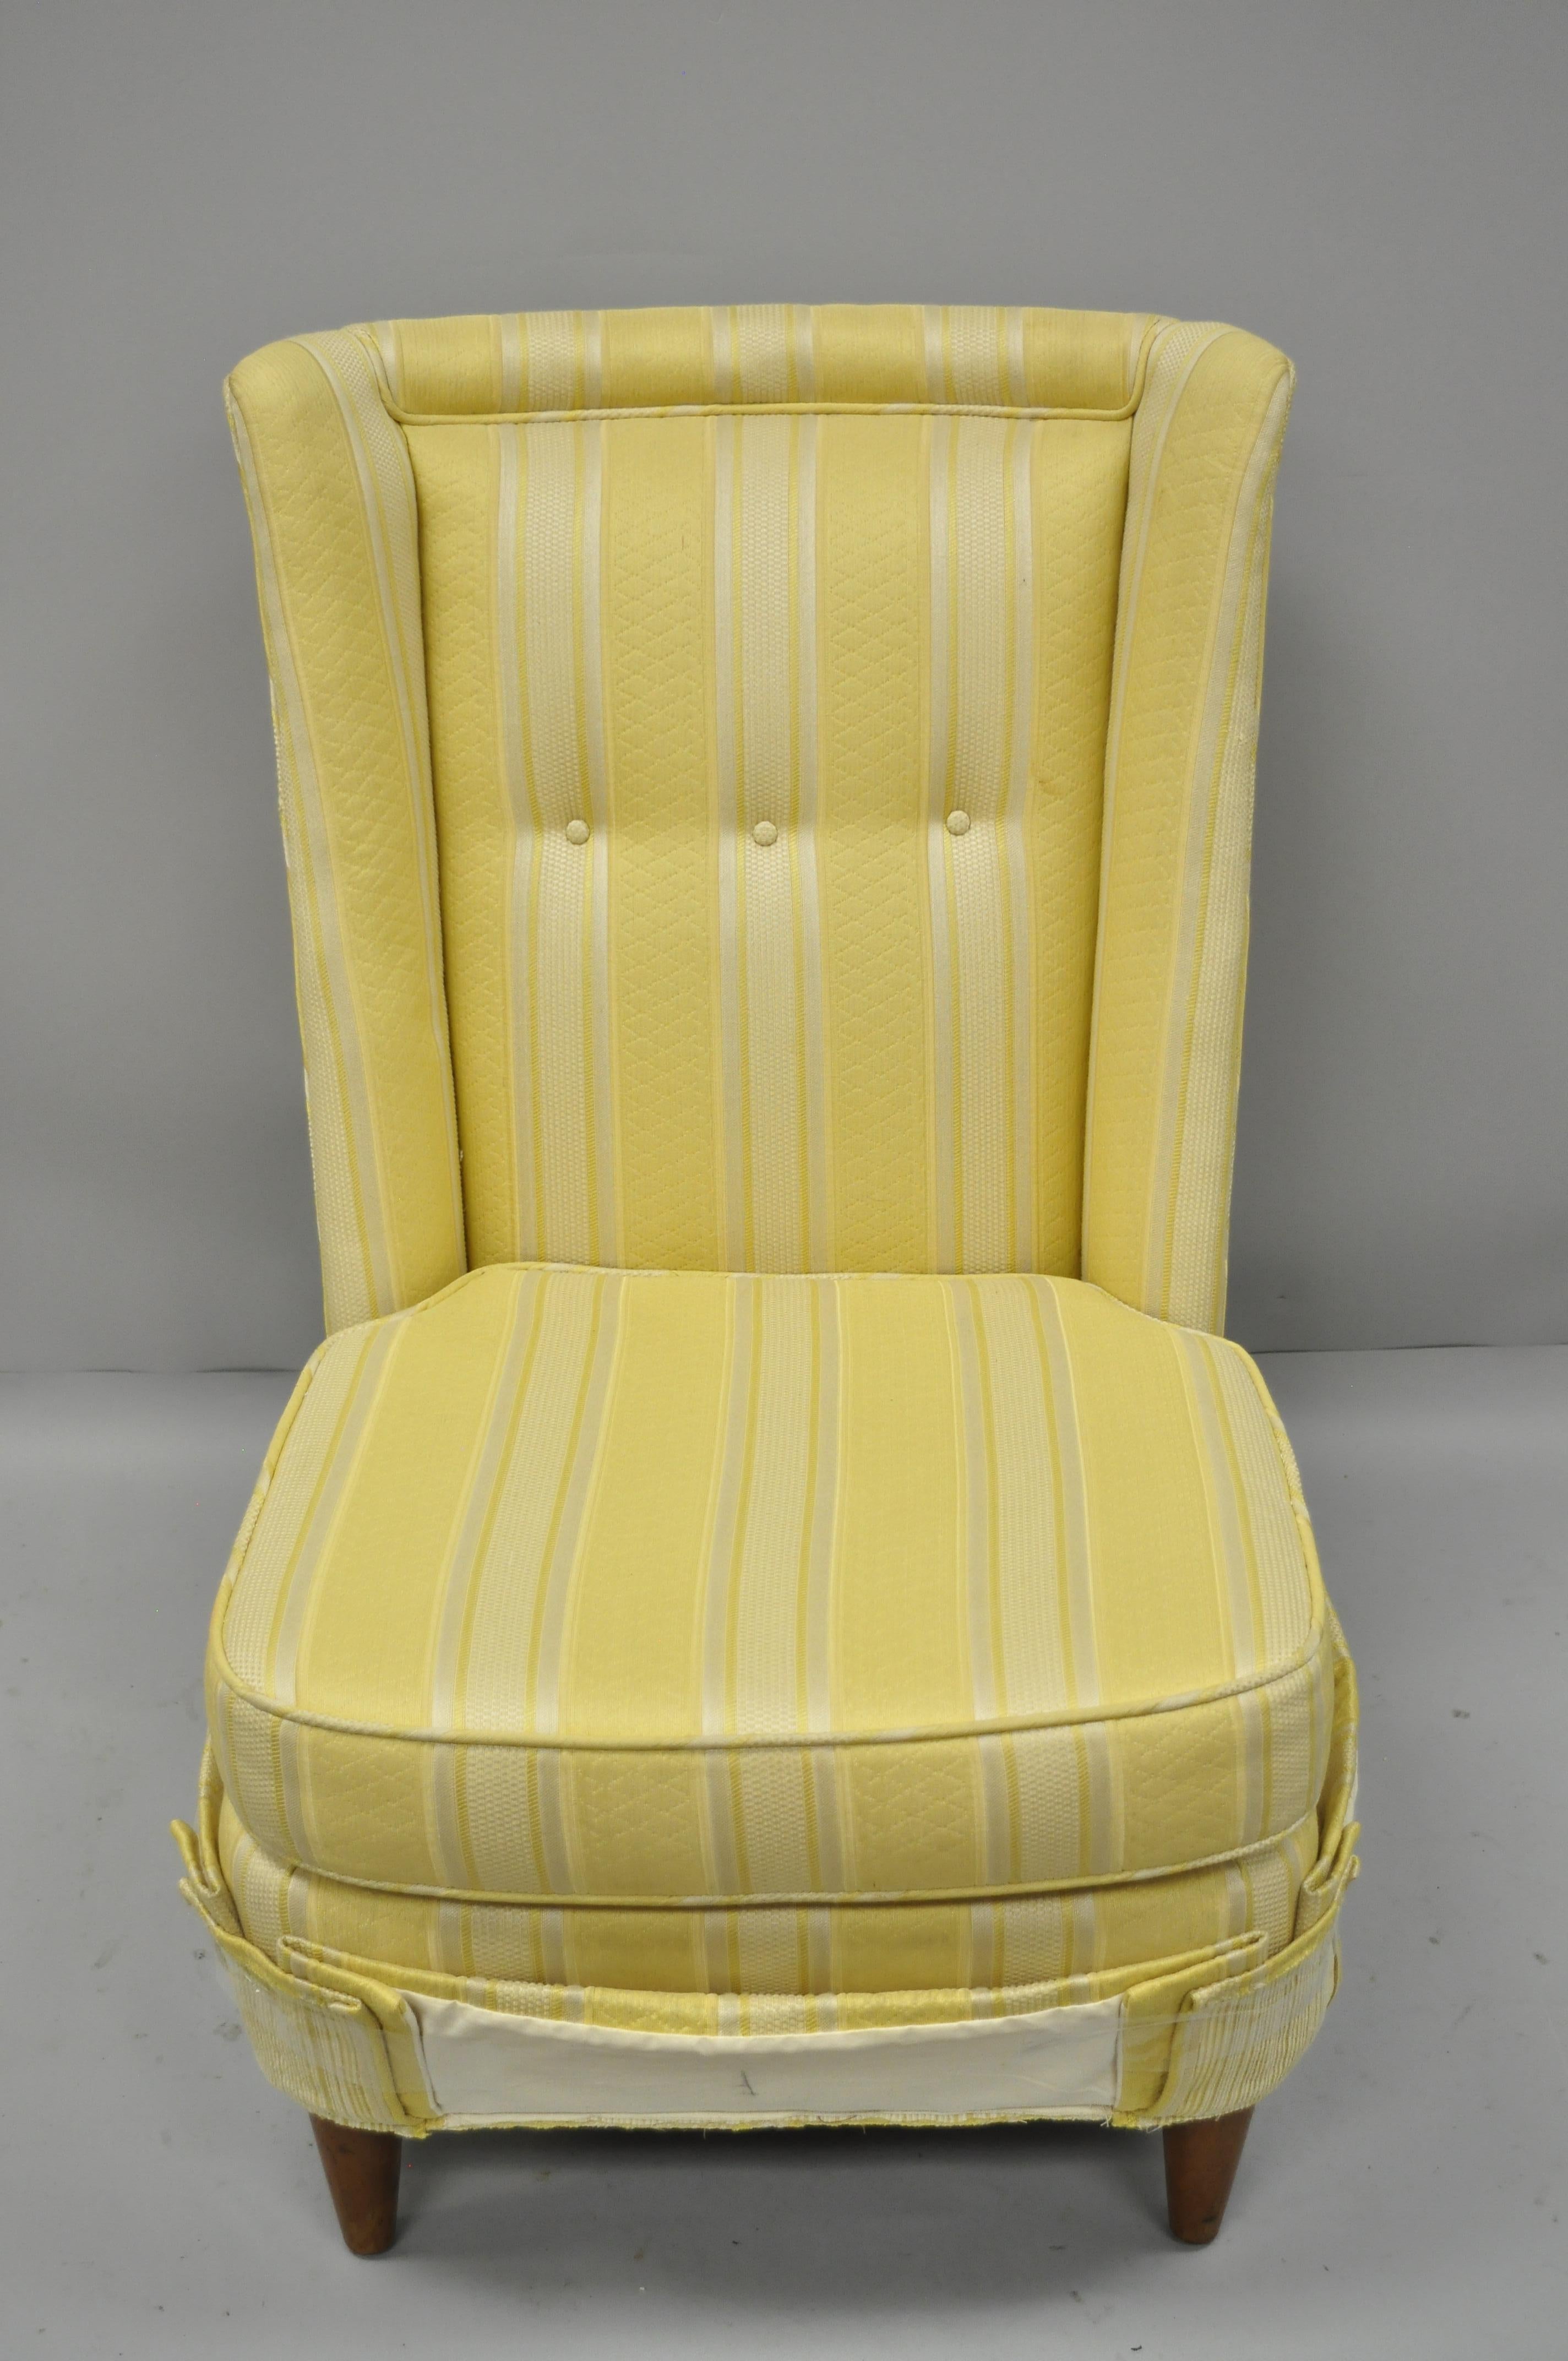 Paul Laszlo gepolsterter Sessel mit Tonnenrücken. Listing ist für einen Stuhl, ähnlichen Stuhl zur Verfügung, wie in anderen Auflistung abgebildet. Voll gepolsterte Rückenlehne, schwere Massivholzkonstruktion, kurze, konische Beine und klare